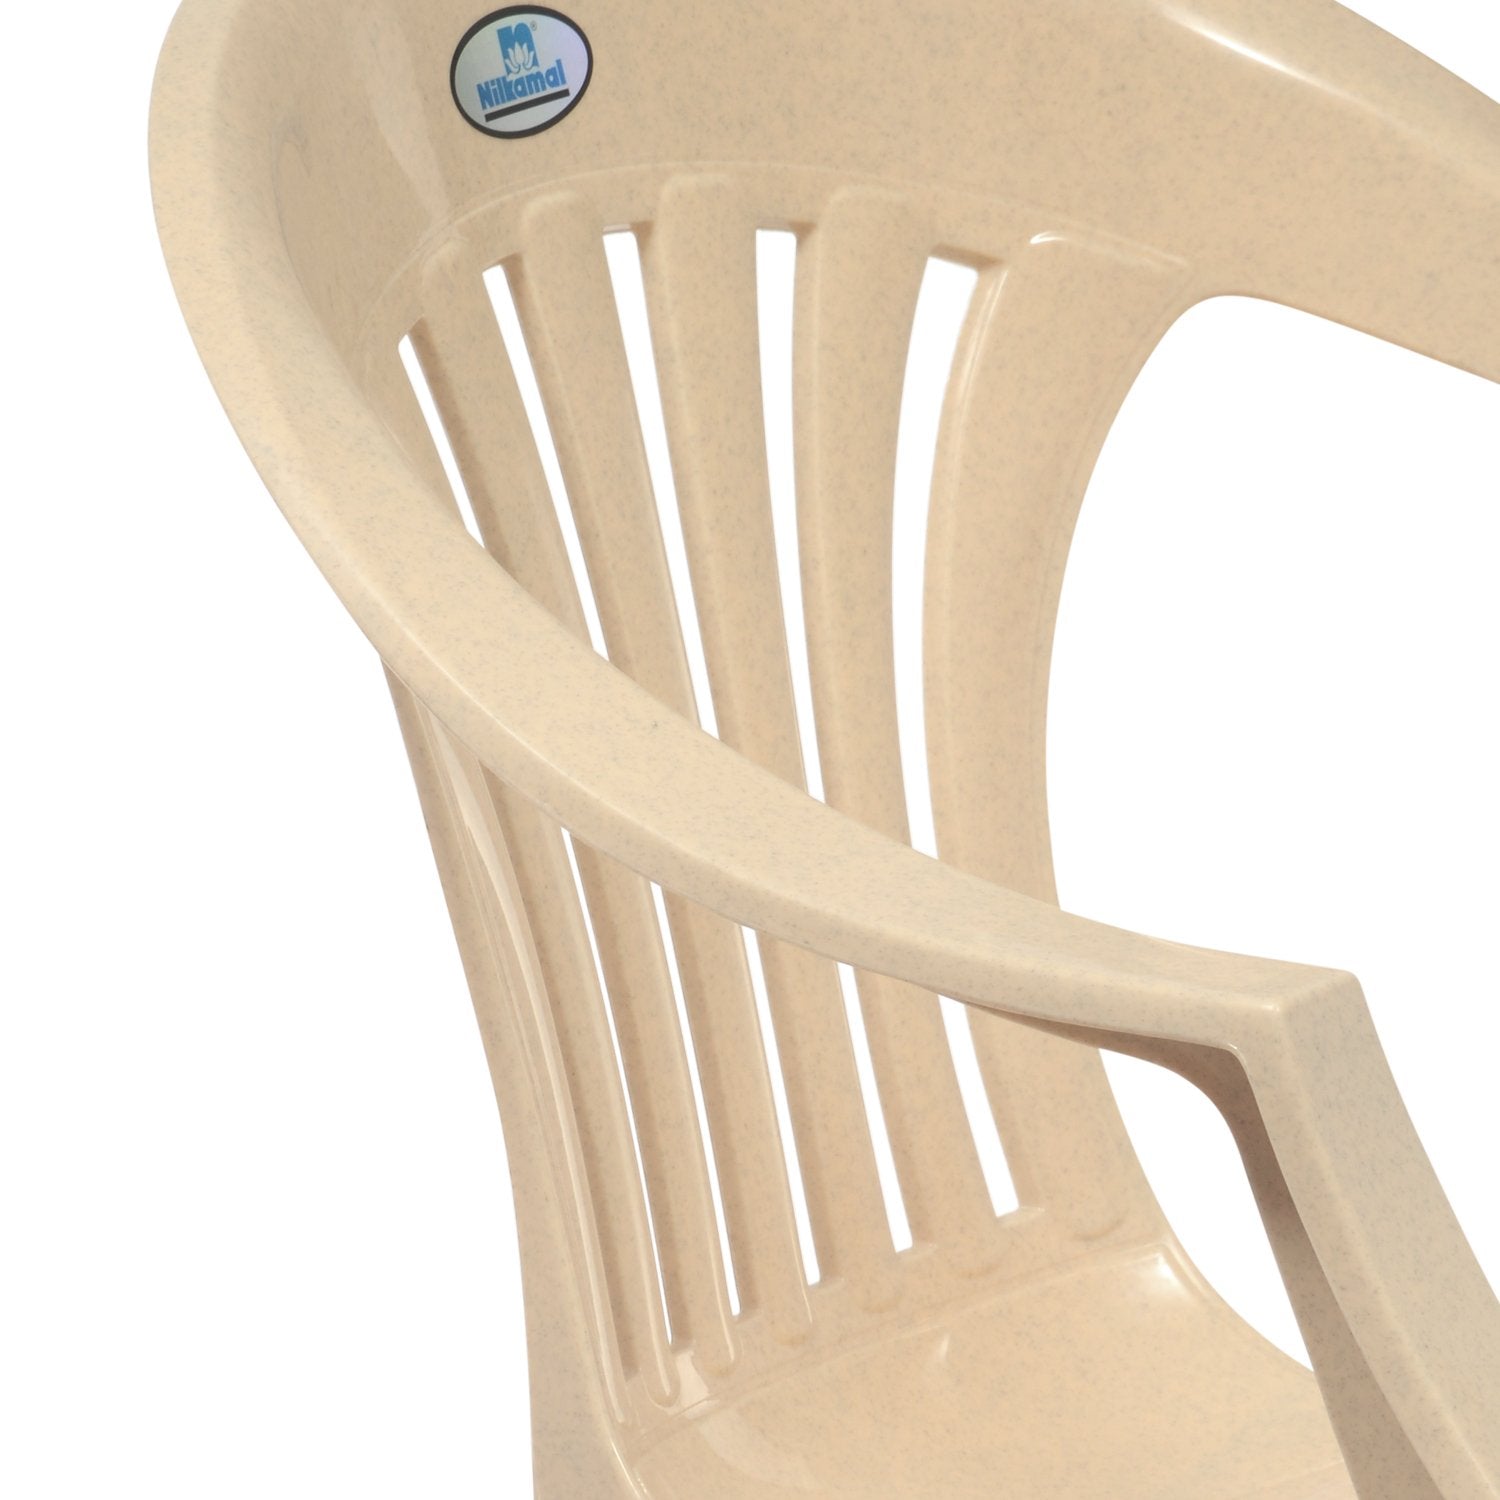 Nilkamal CHR2101 Mid Back Chair with Arm